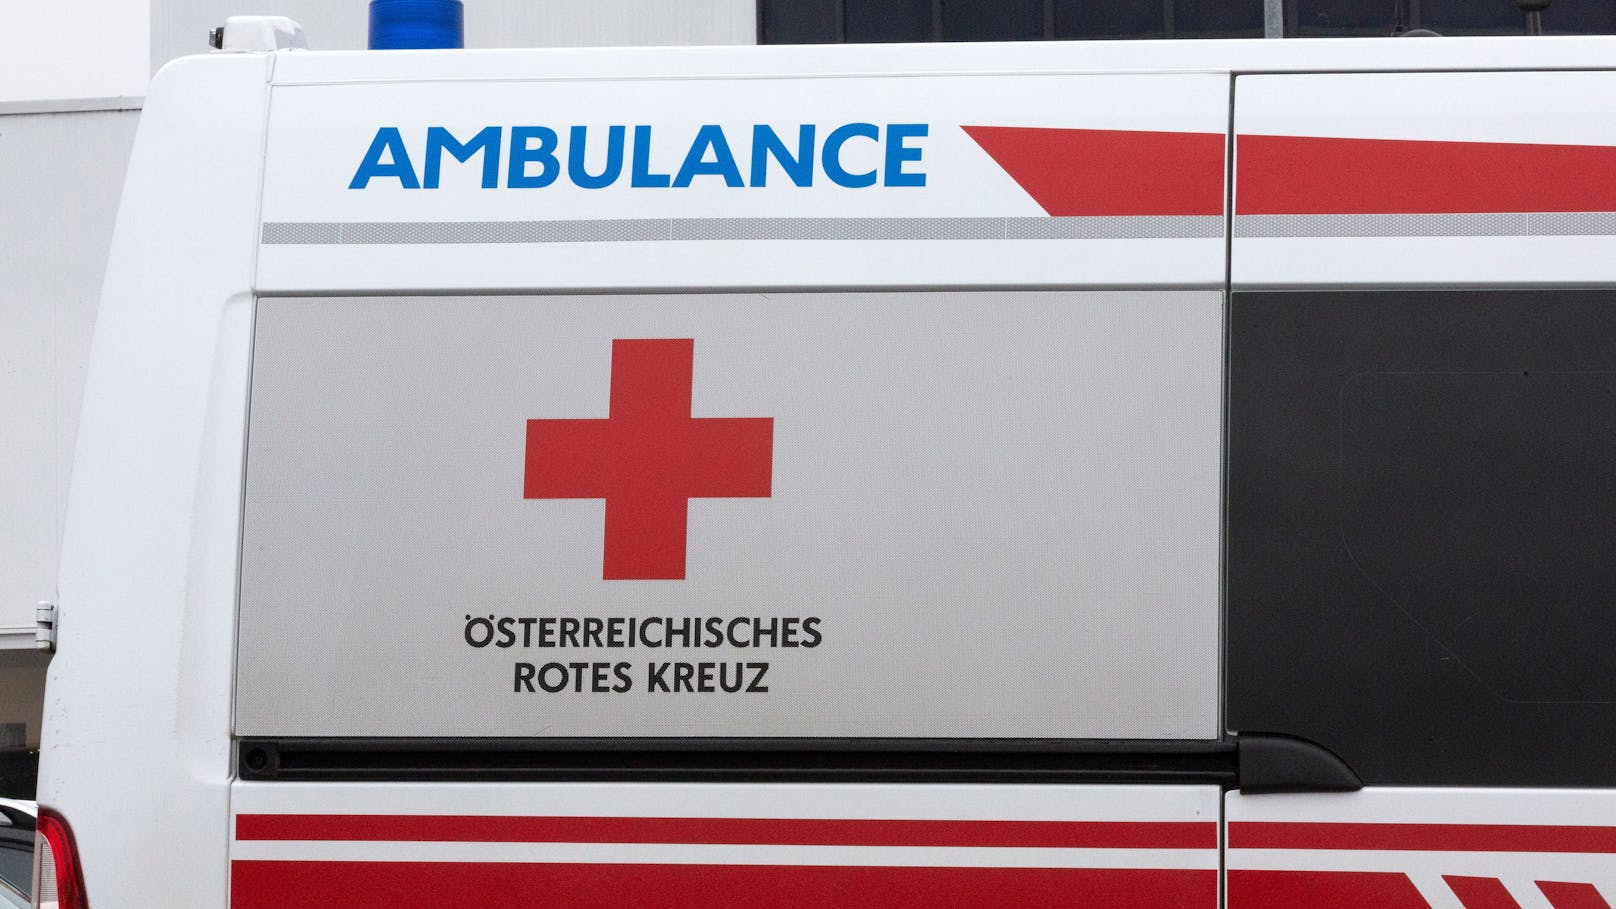 Mindestens 20 der derzeit 350 Standorte des Roten Kreuzes sollen weltweit geschlossen werden.